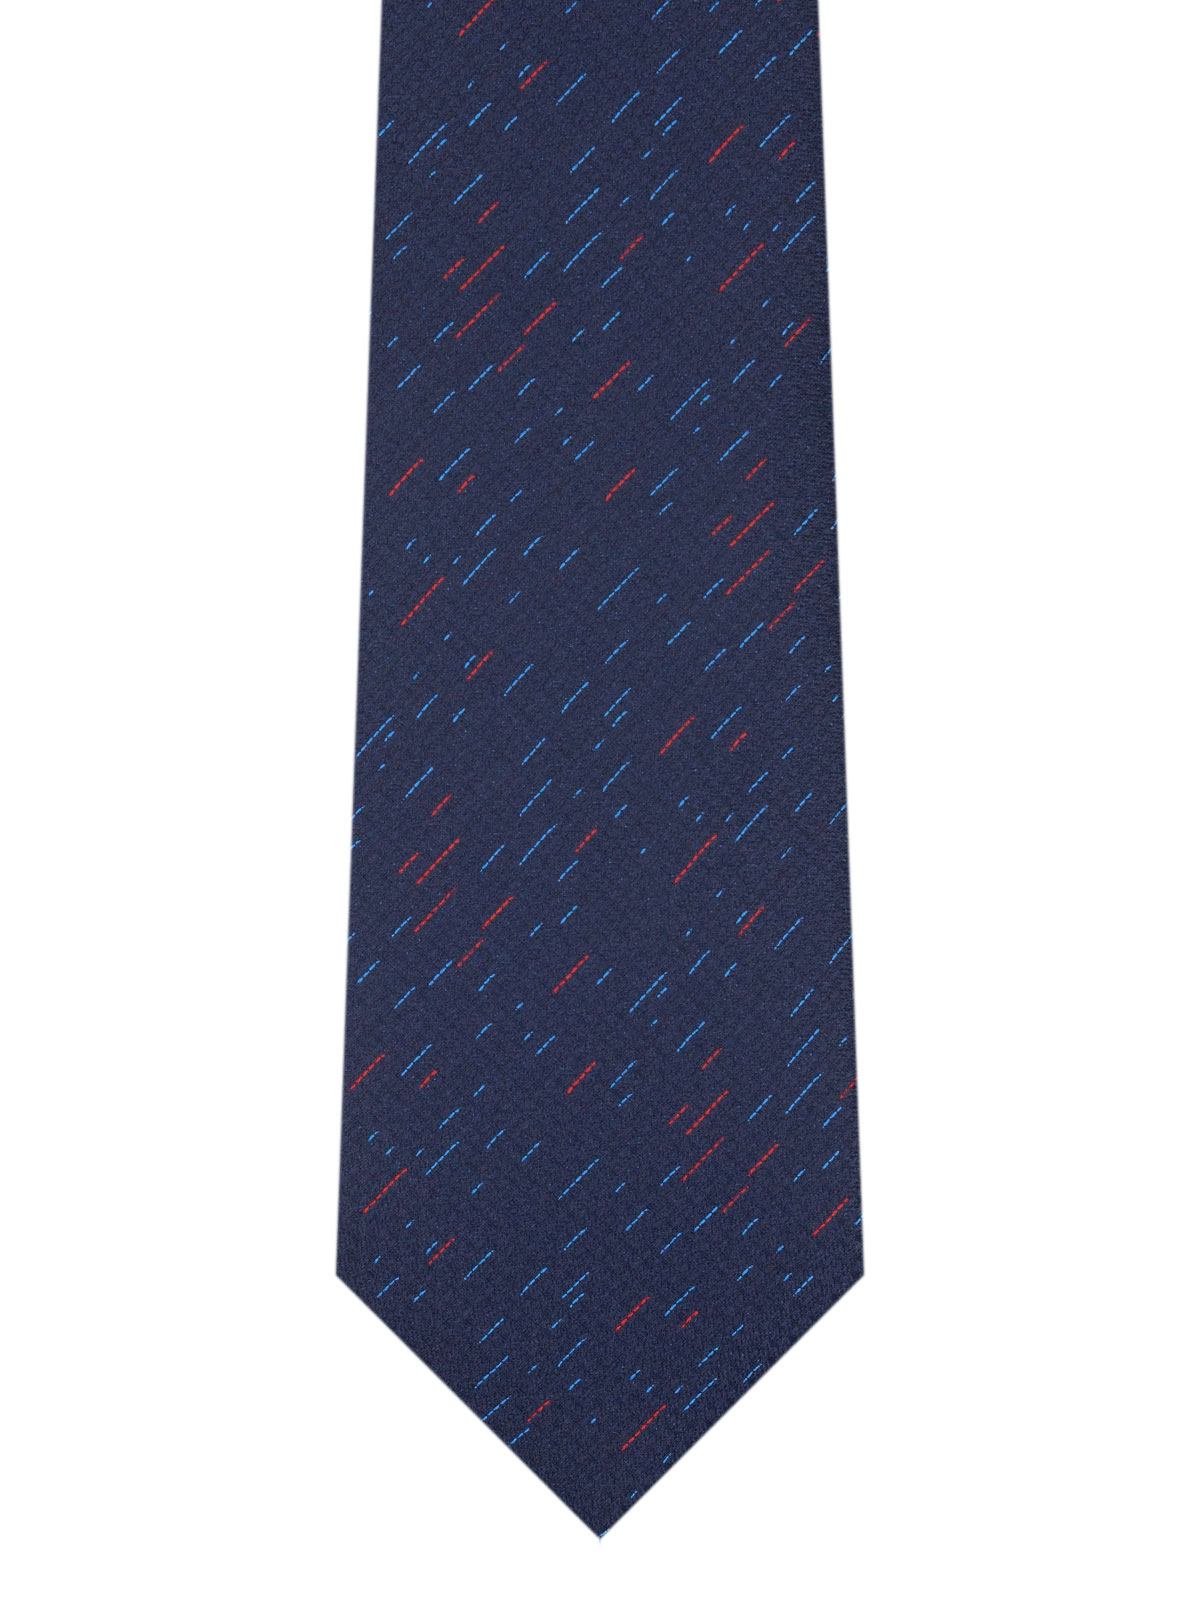 Δομημένη μπλε γραβάτα - 10174 - € 14.06 img2